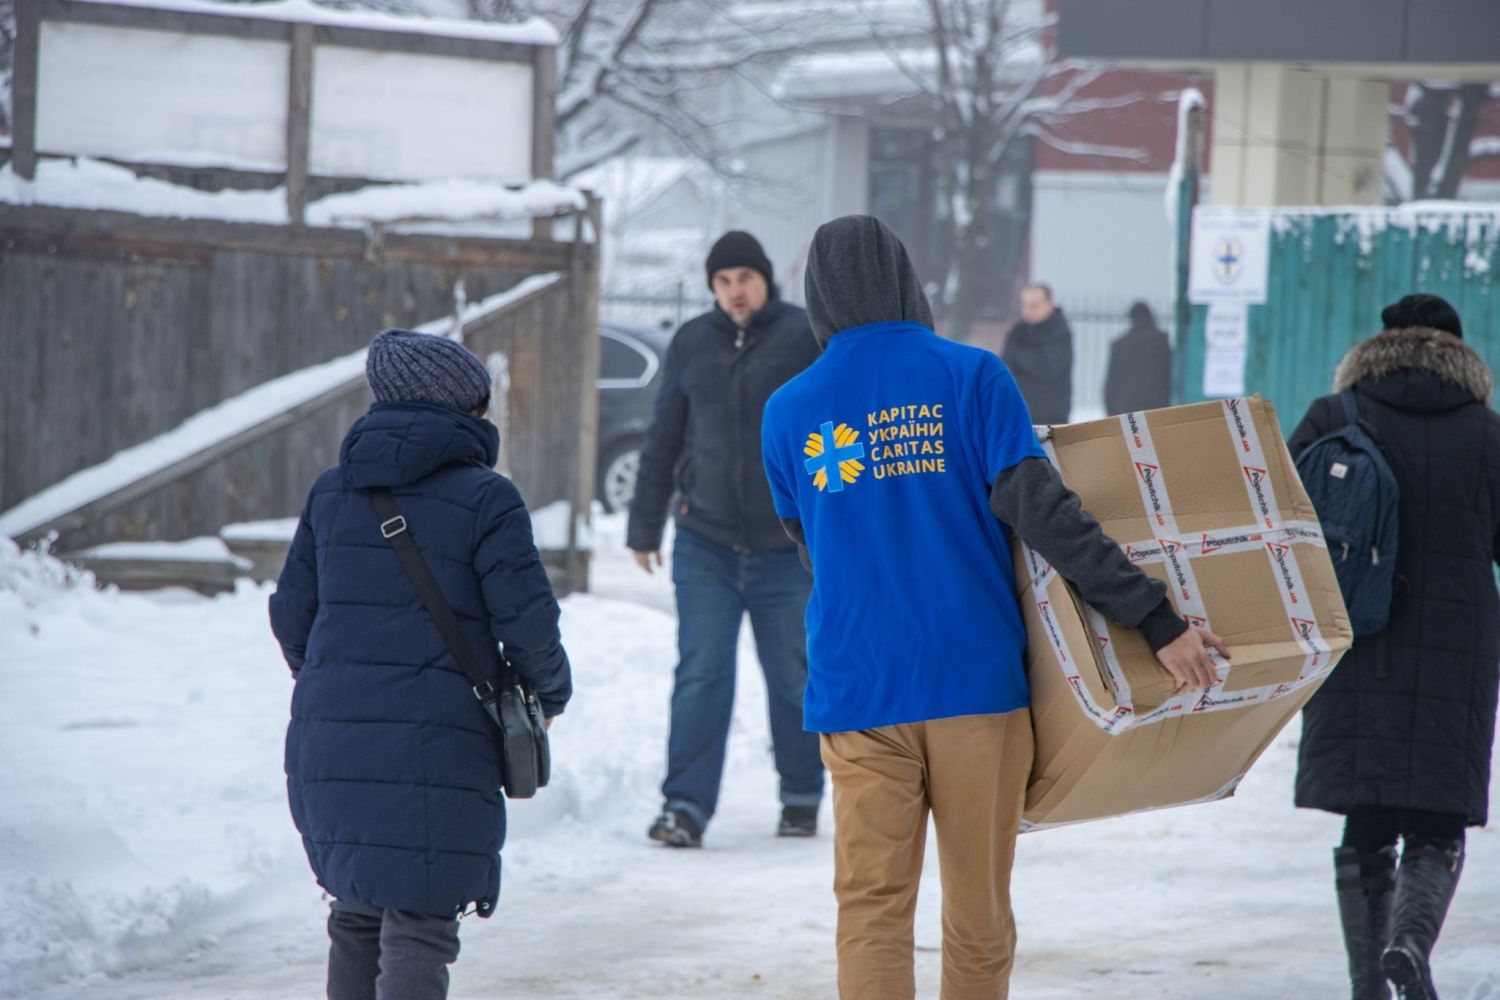 Caritas Ukraine liefert Pakete mit notwendigen Gütern